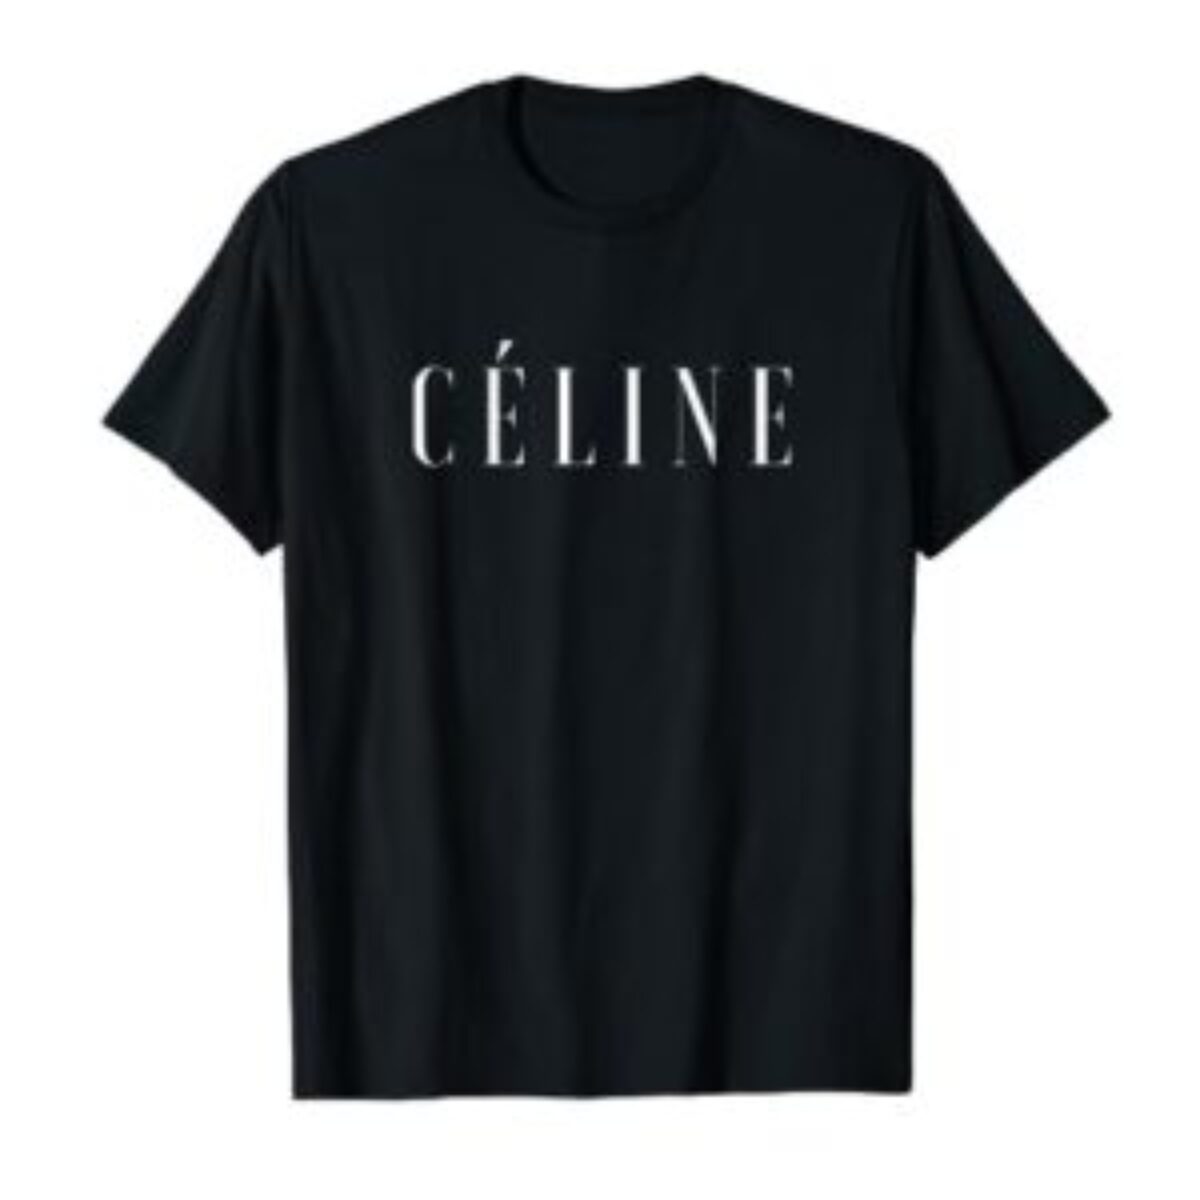 Celine T Shirt || Official Celine Clothing | SHOP NOW